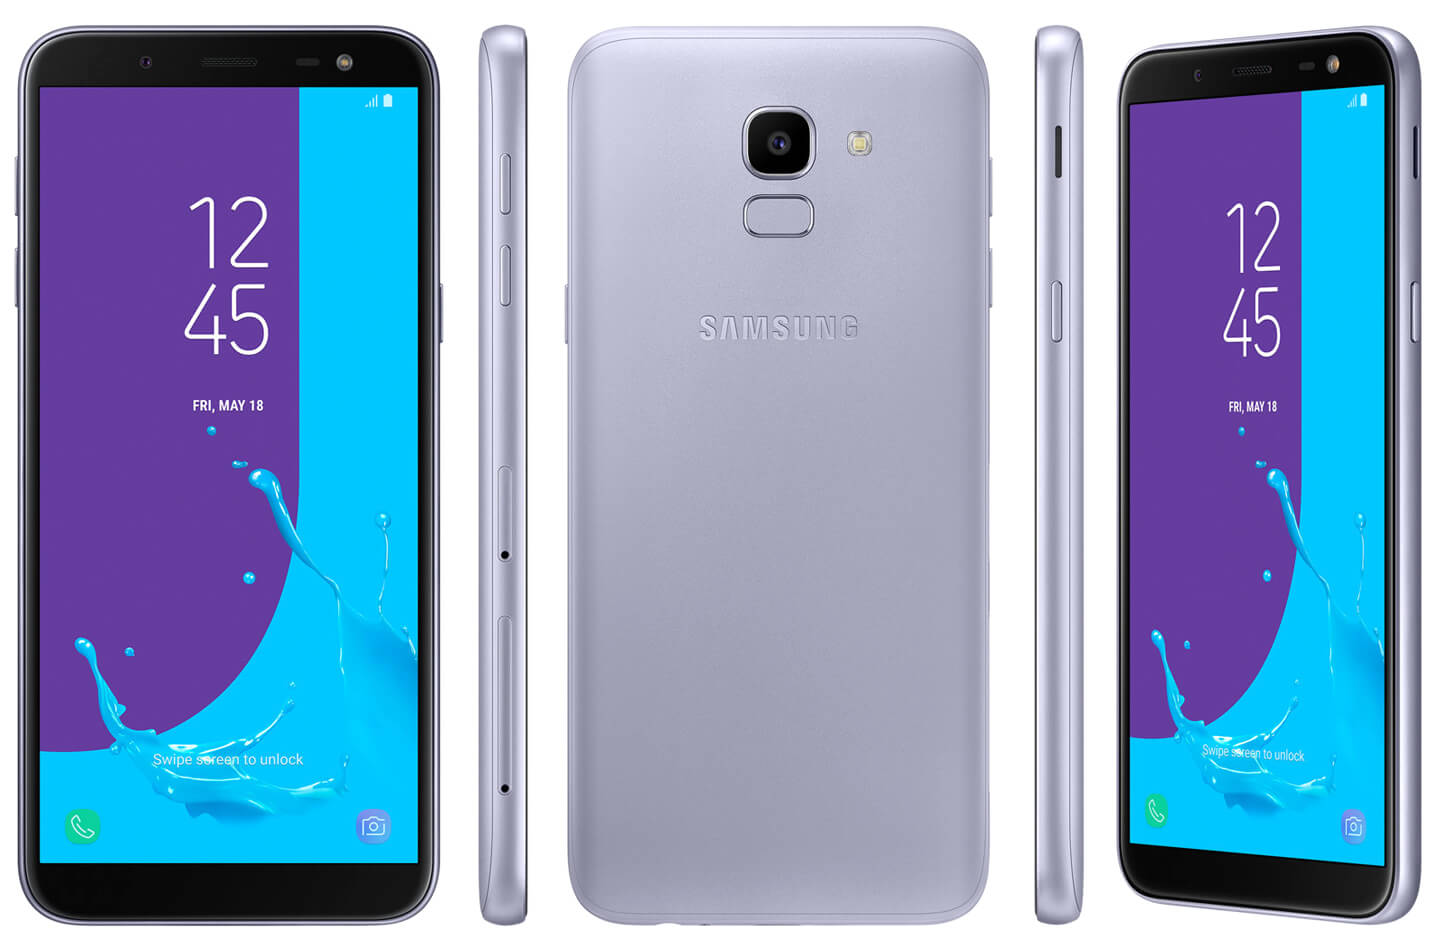 Bekritiseren slim staart Galaxy J6 kopen: de goedkoopste smartphone van Samsung | LetsGoMobile